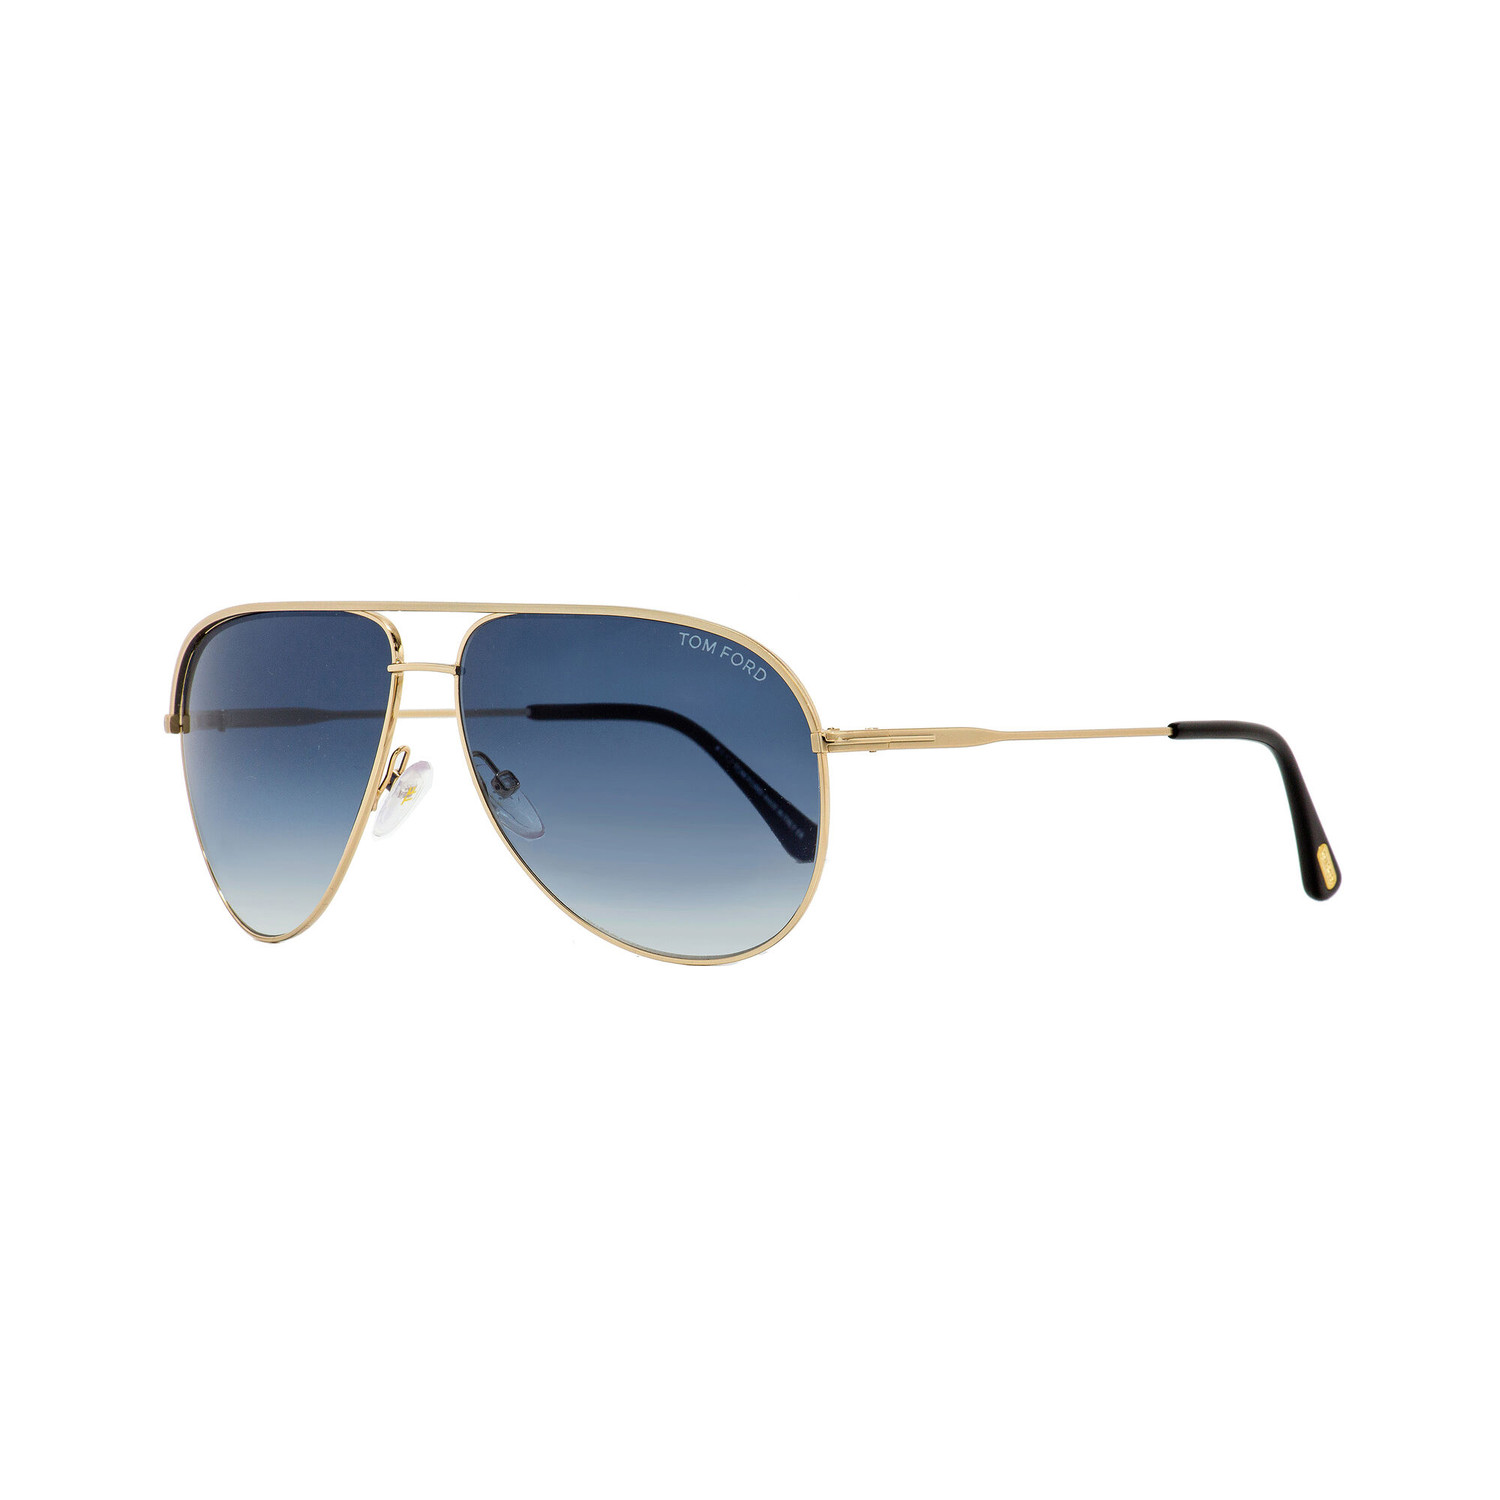 Men's FT0466 Aviator Sunglasses // Gold + Blue Gradient - Tom Ford ...